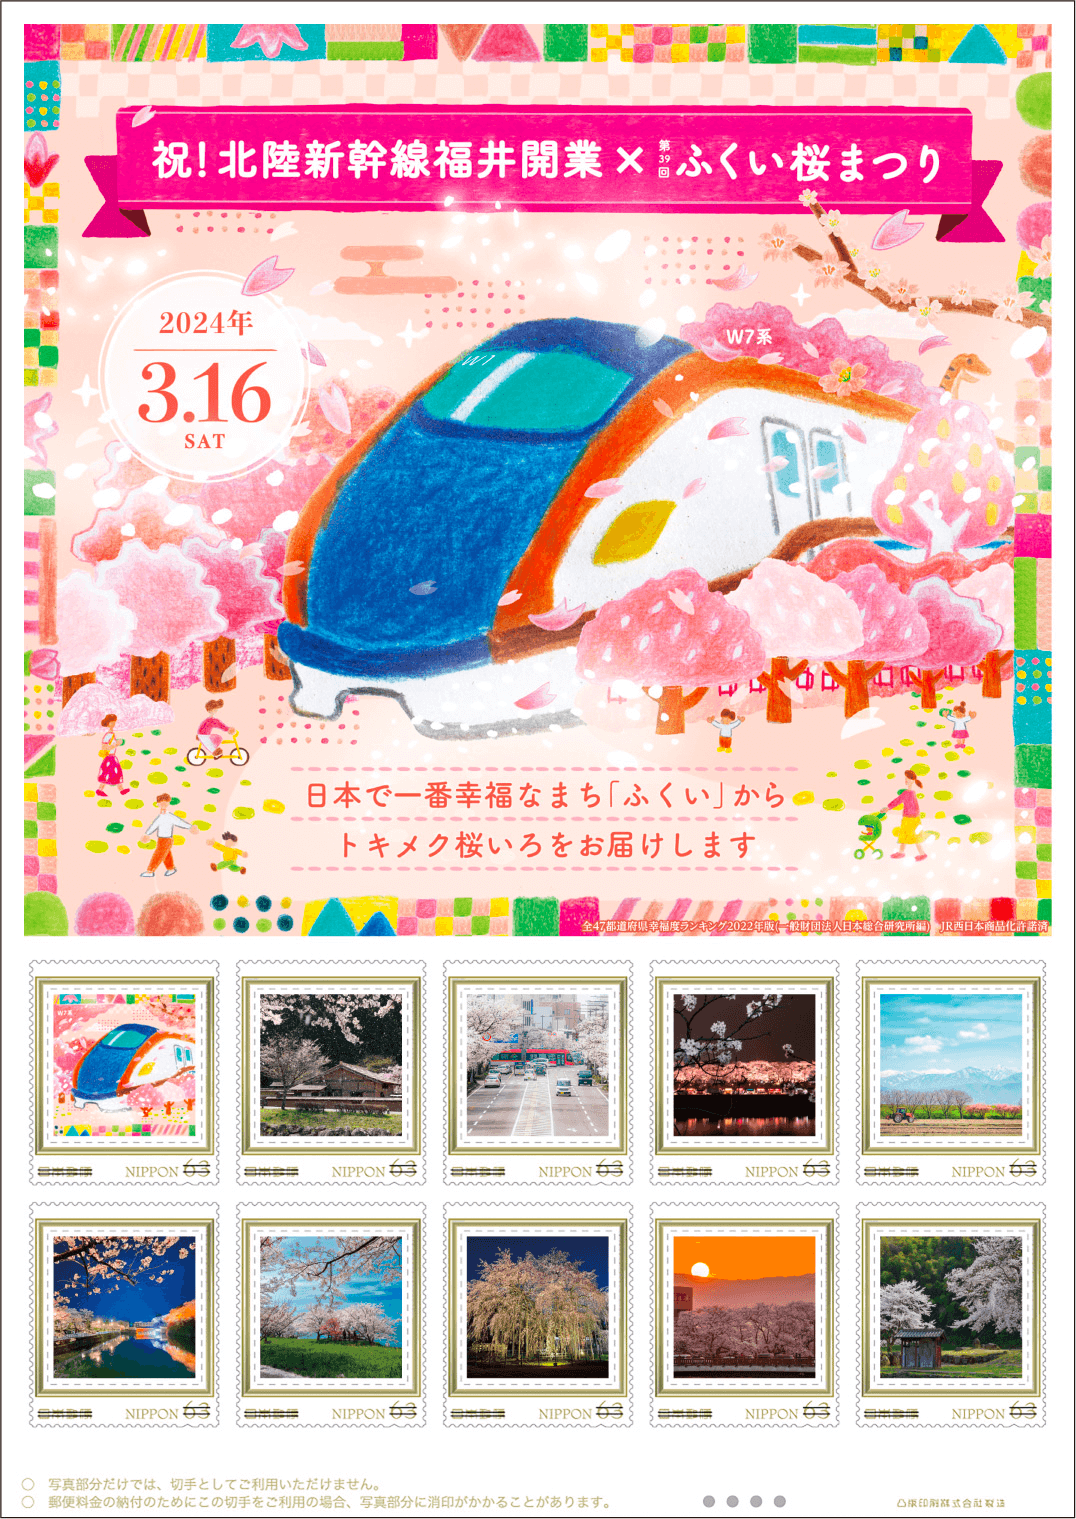 オリジナル フレーム切手セット「祝！北陸新幹線福井開業×第39回ふくい桜まつり」のイラスト